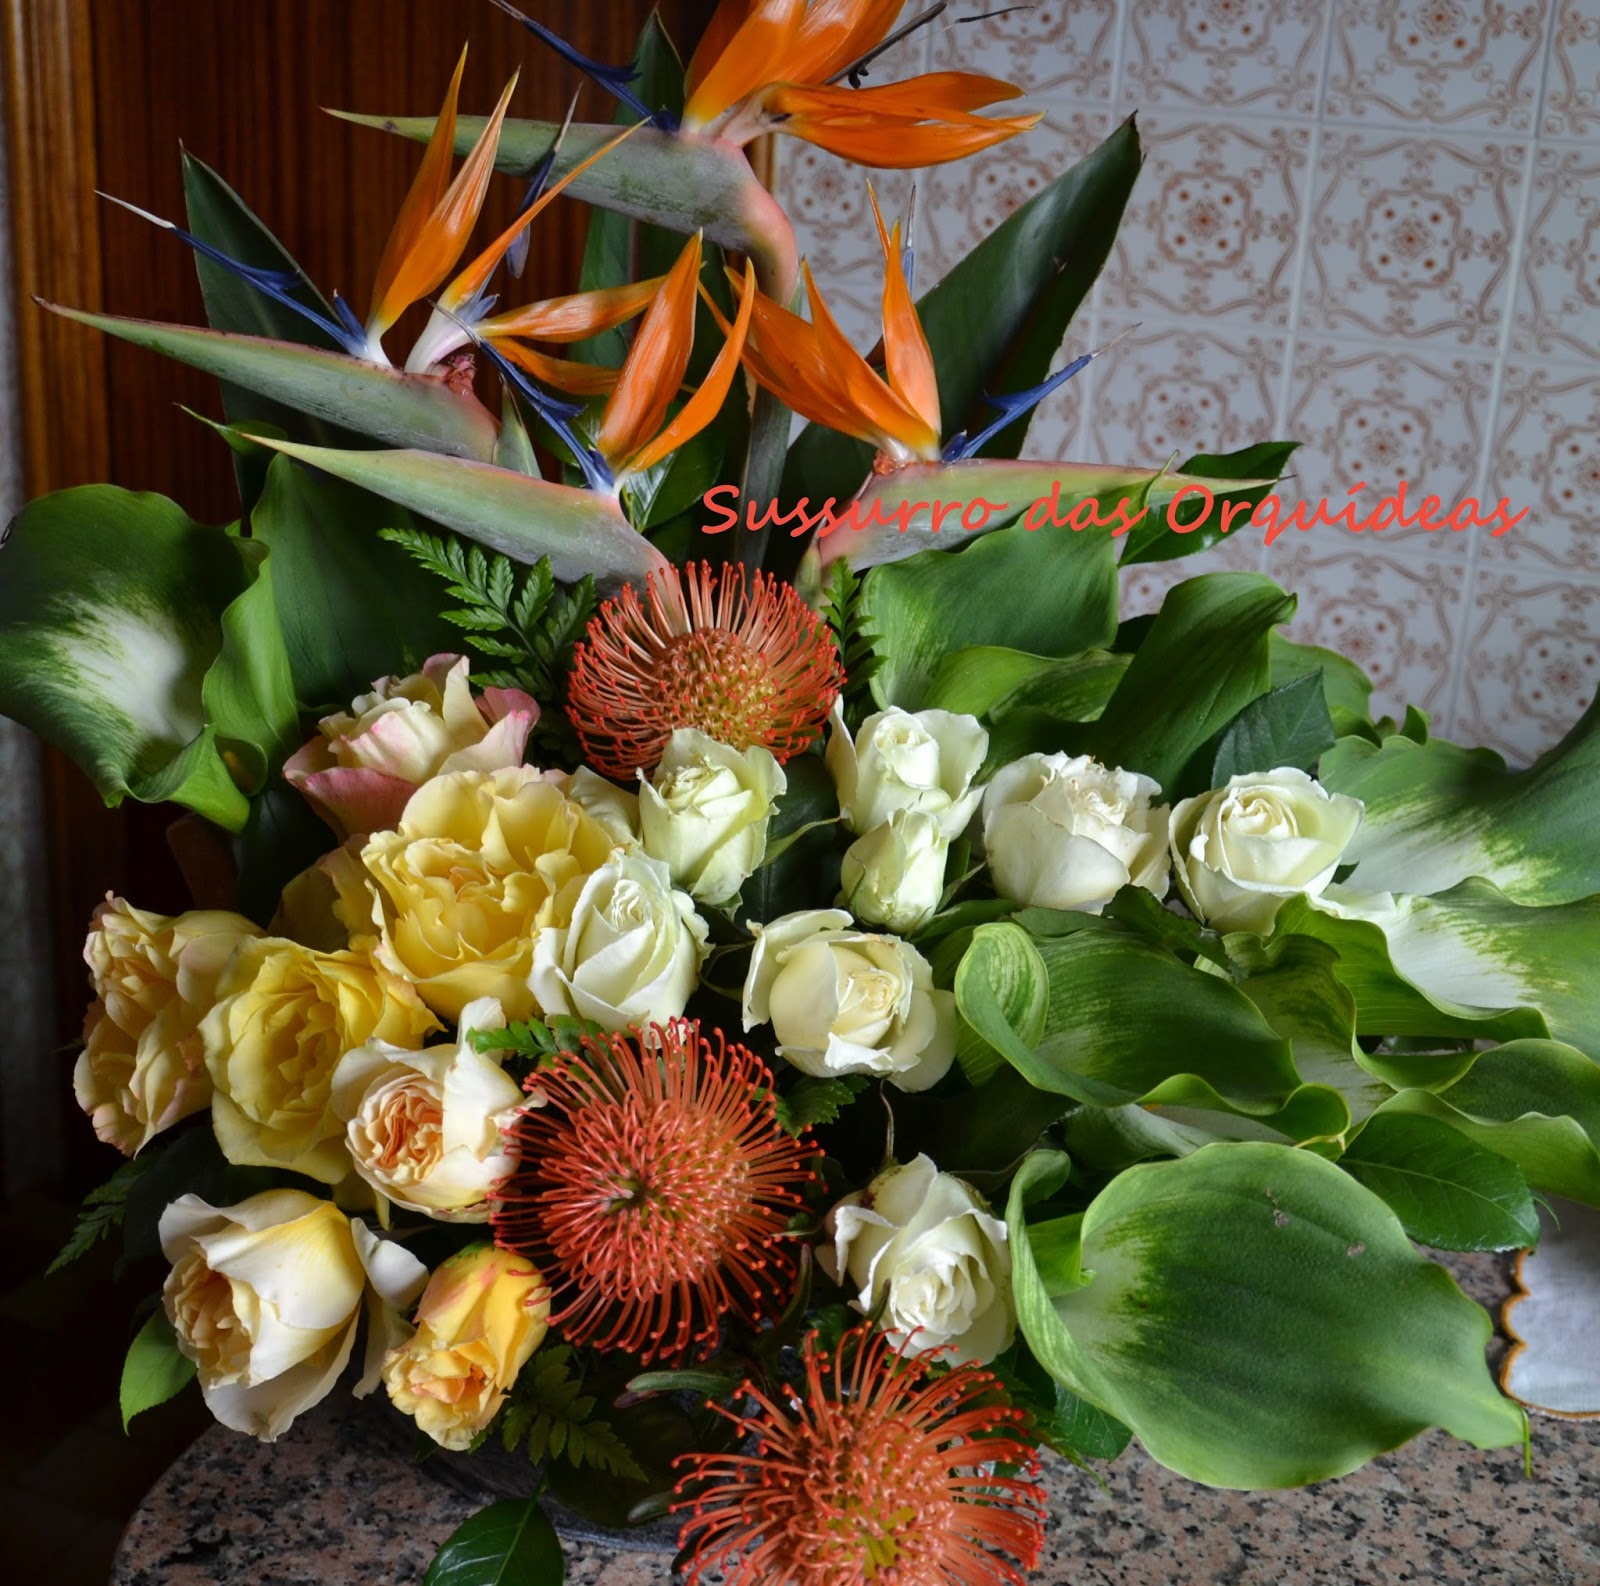 Sussurro das Orquídeas: Uma experiência com Leucospermum (Protea)